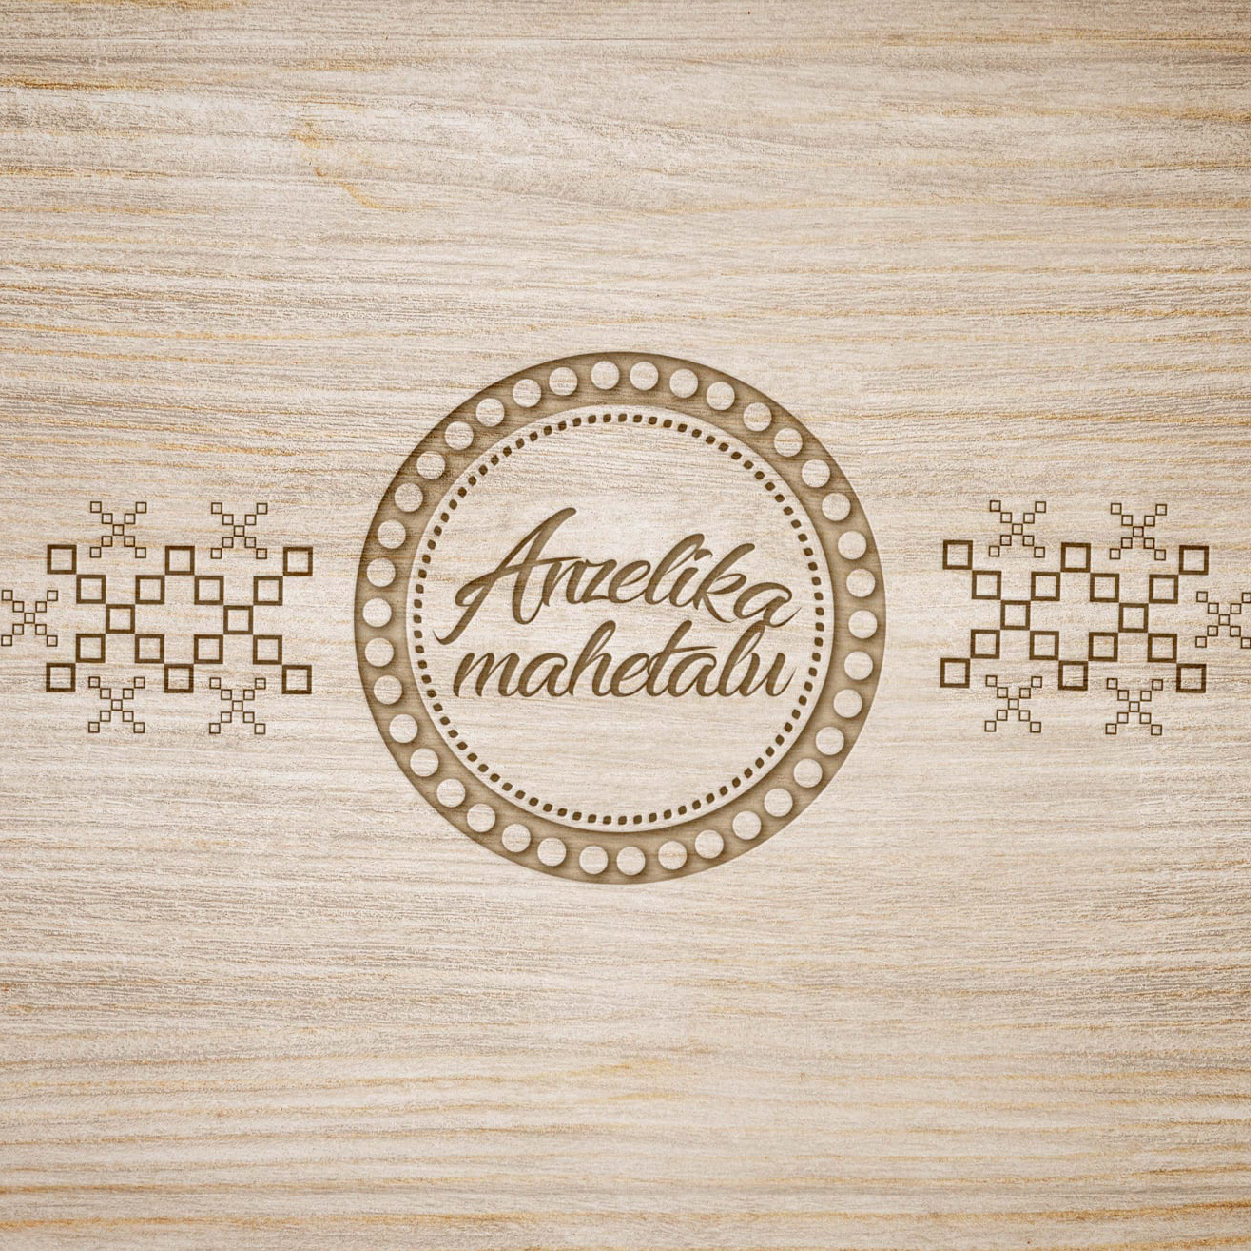 Anzelika Mahetalu logo